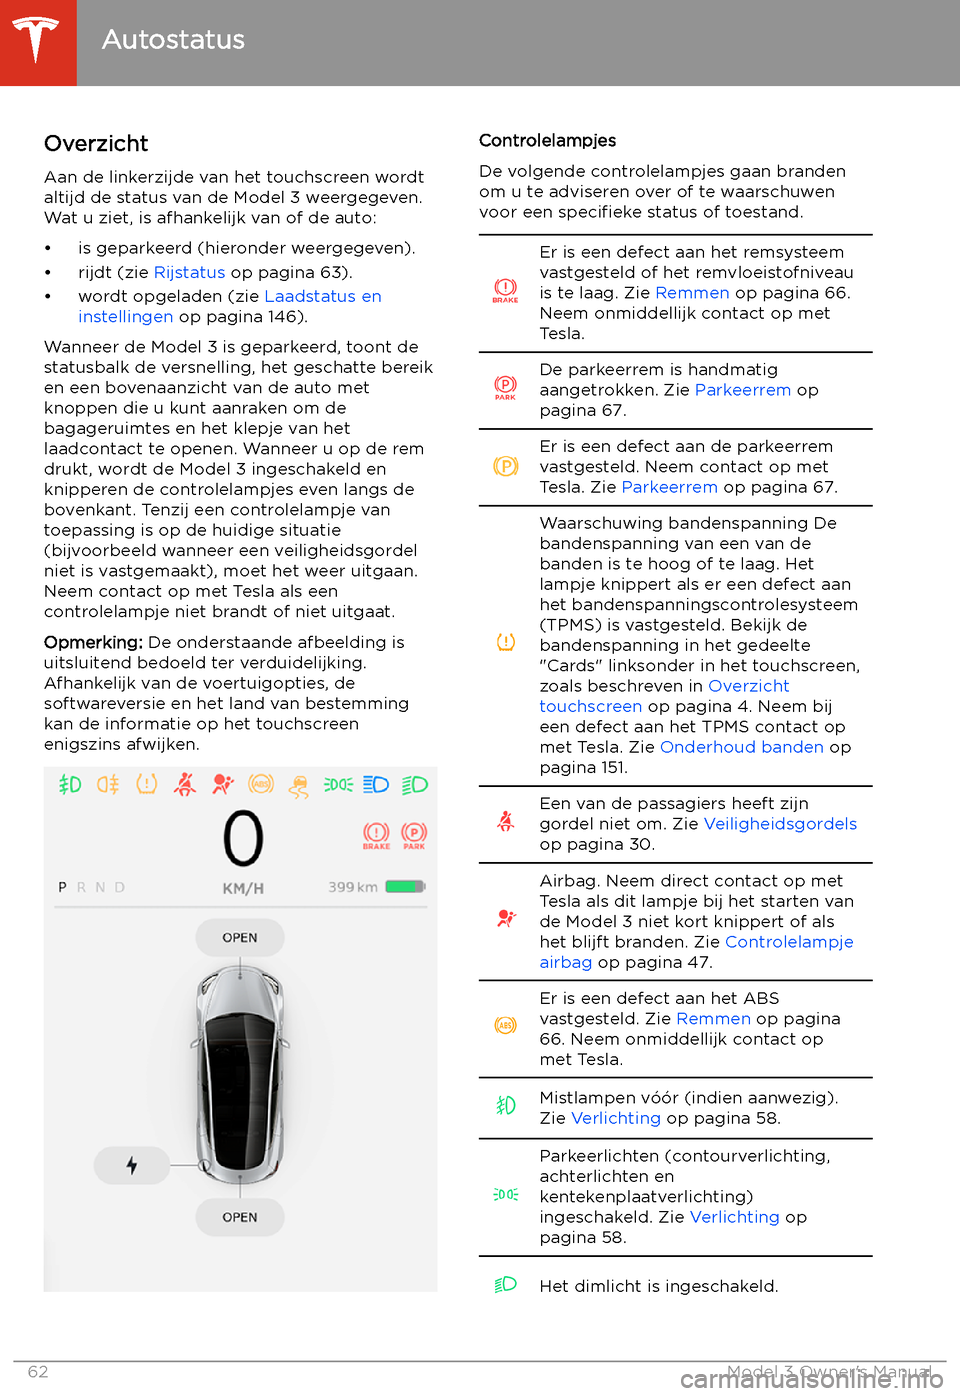 TESLA MODEL 3 2019  Handleiding (in Dutch) Autostatus
Overzicht
Aan de linkerzijde van het touchscreen wordt
altijd de status van de Model 3 weergegeven.
Wat u ziet, is afhankelijk van of de auto:
